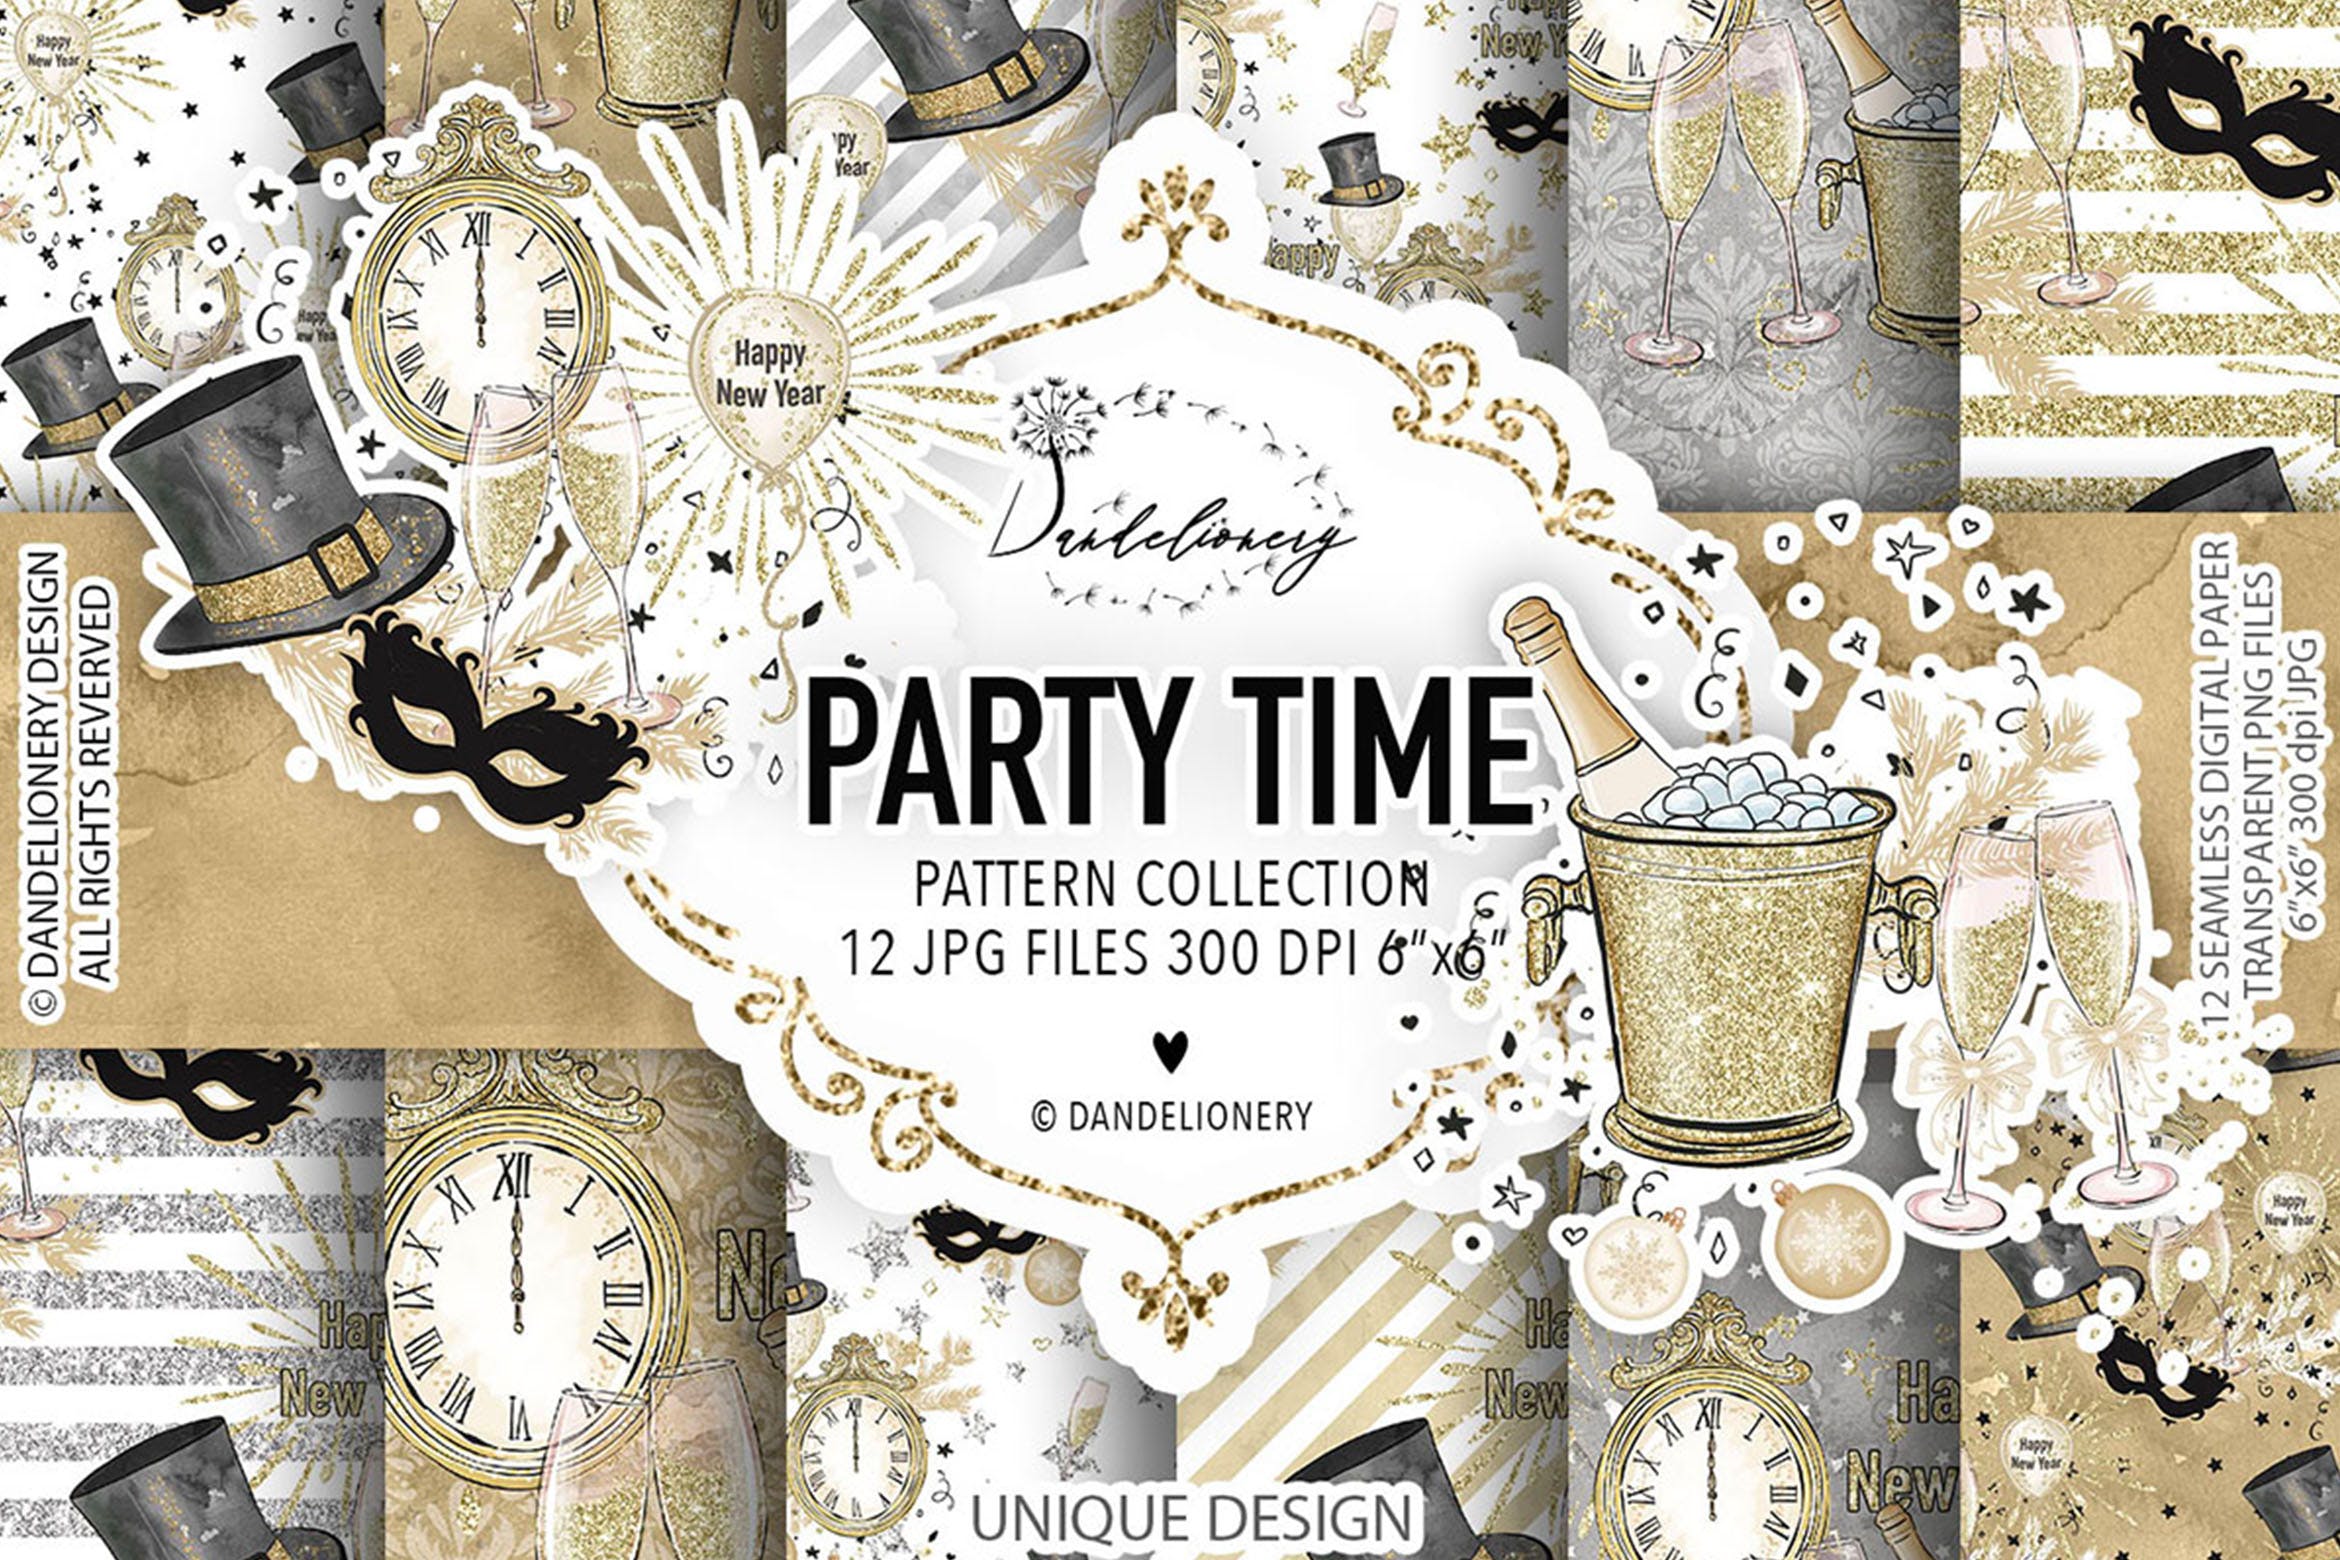 派对时光水彩手绘数码纸张图案背景第一素材精选 Party Time digital paper pack插图